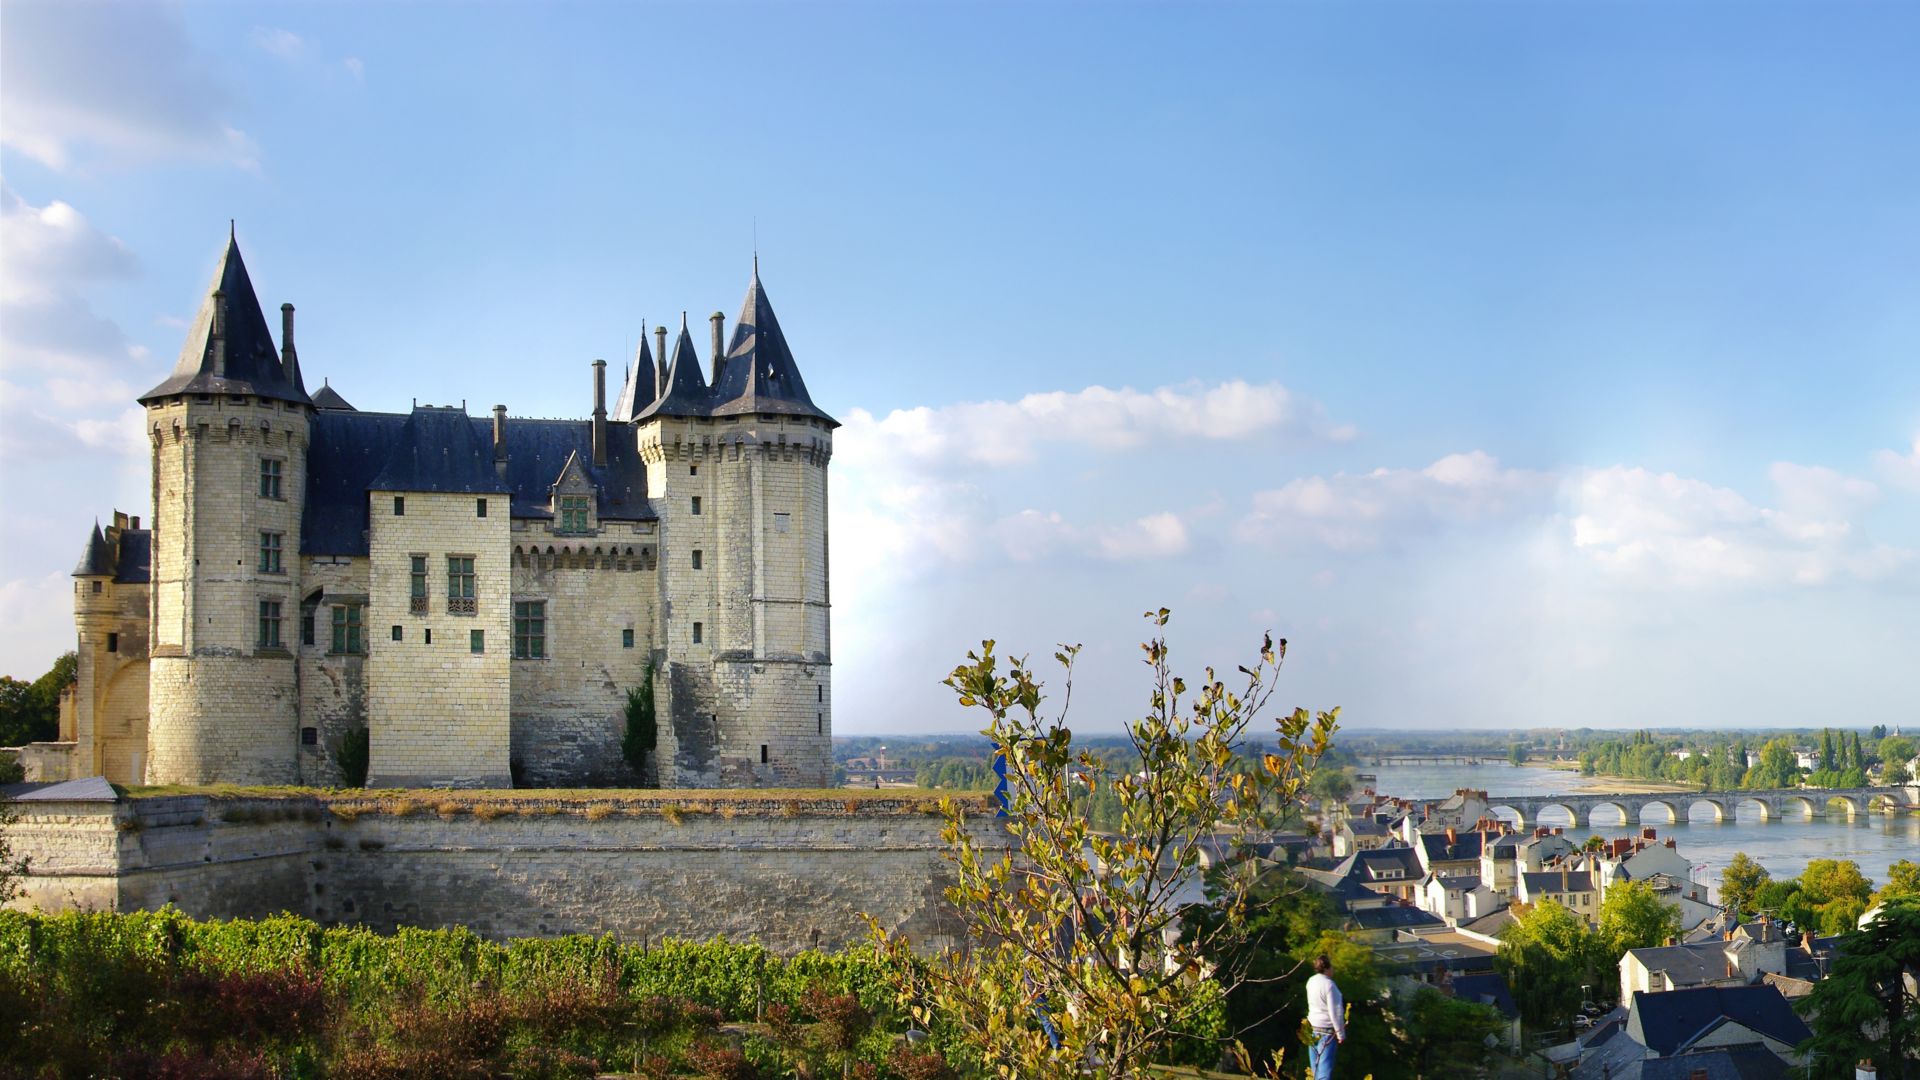 Château de Saumur par une journée ensoleillée dans le Val de Loire